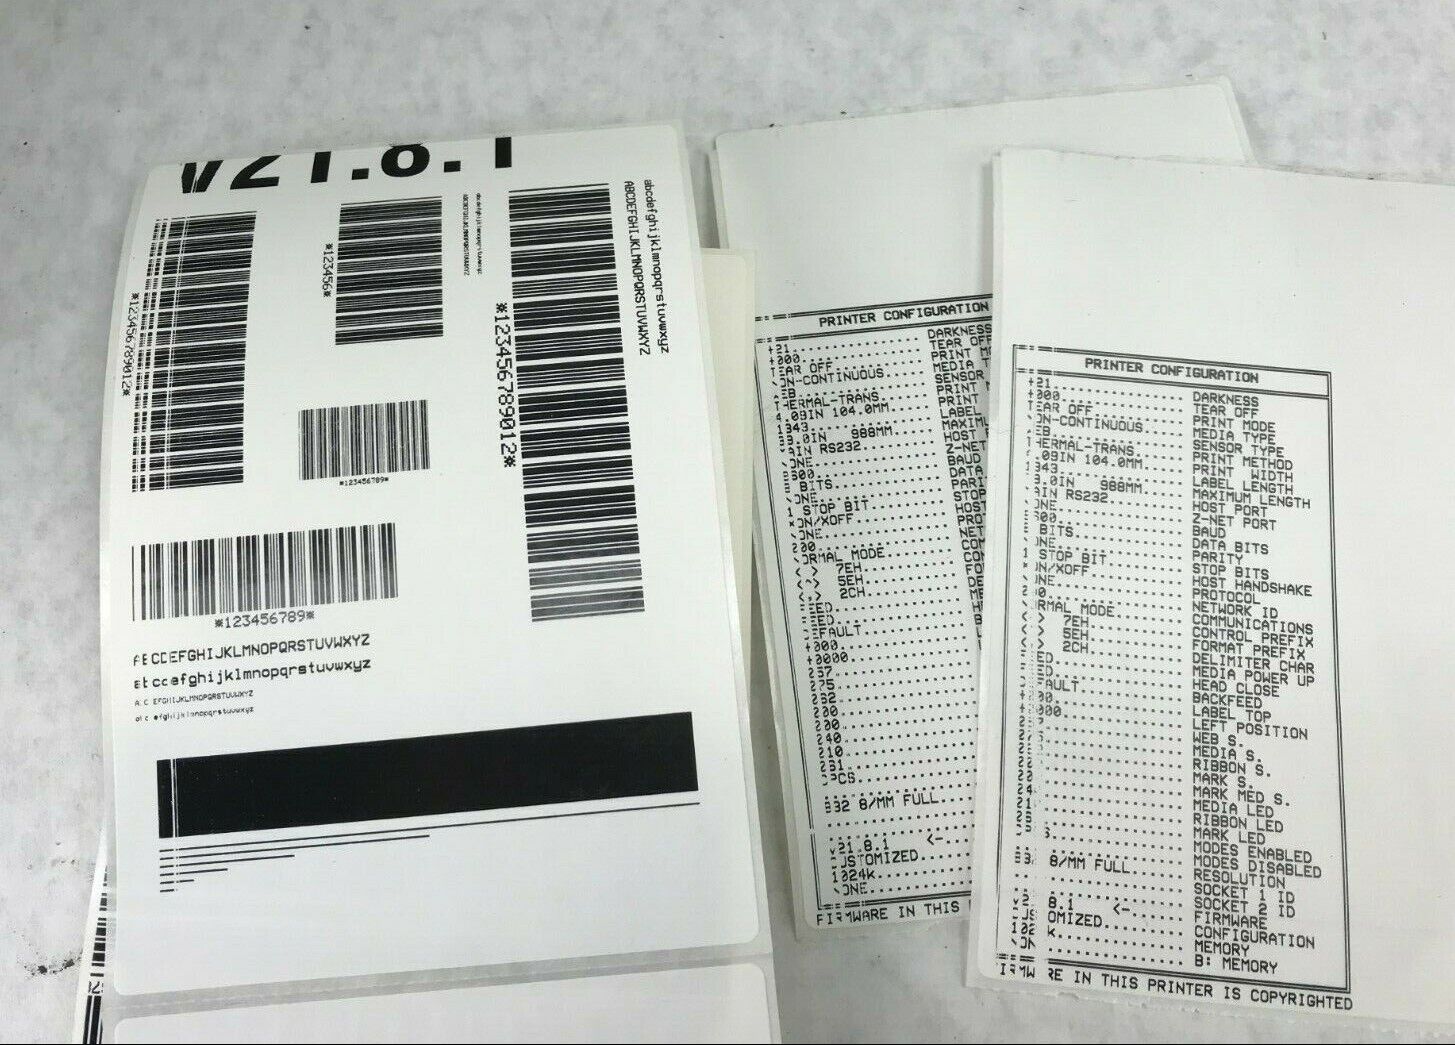 Zebra 105SE 105-511-00000 Thermal Transfer Label Printer - Fading Printhead